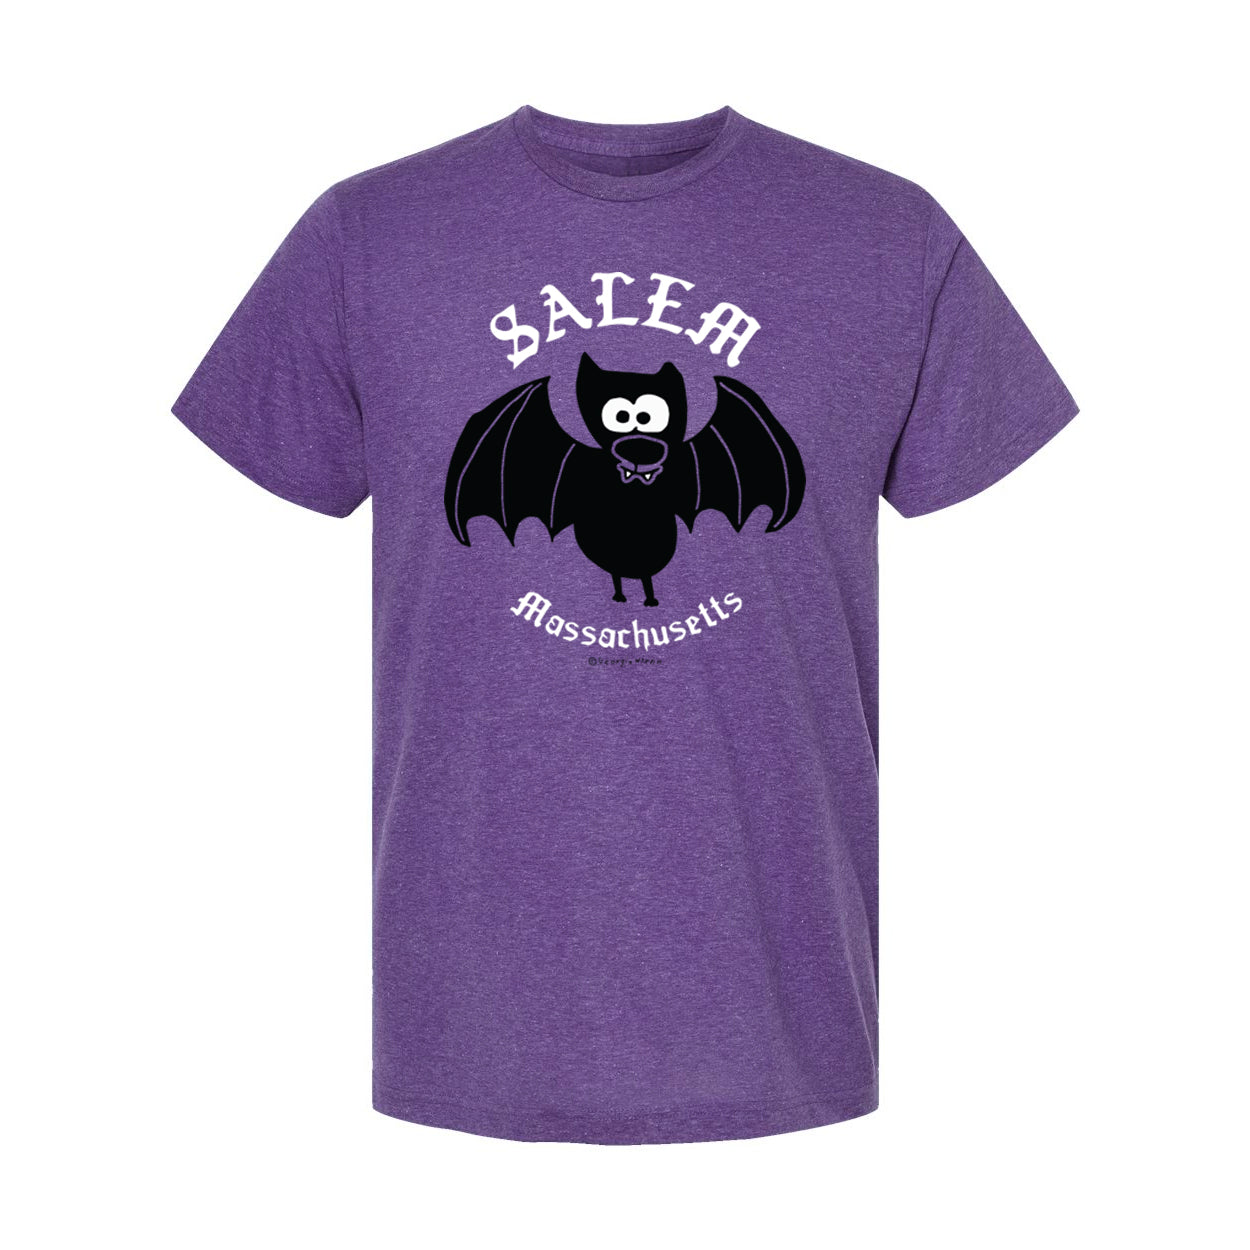 Salem "Vampire Bat" T-Shirt